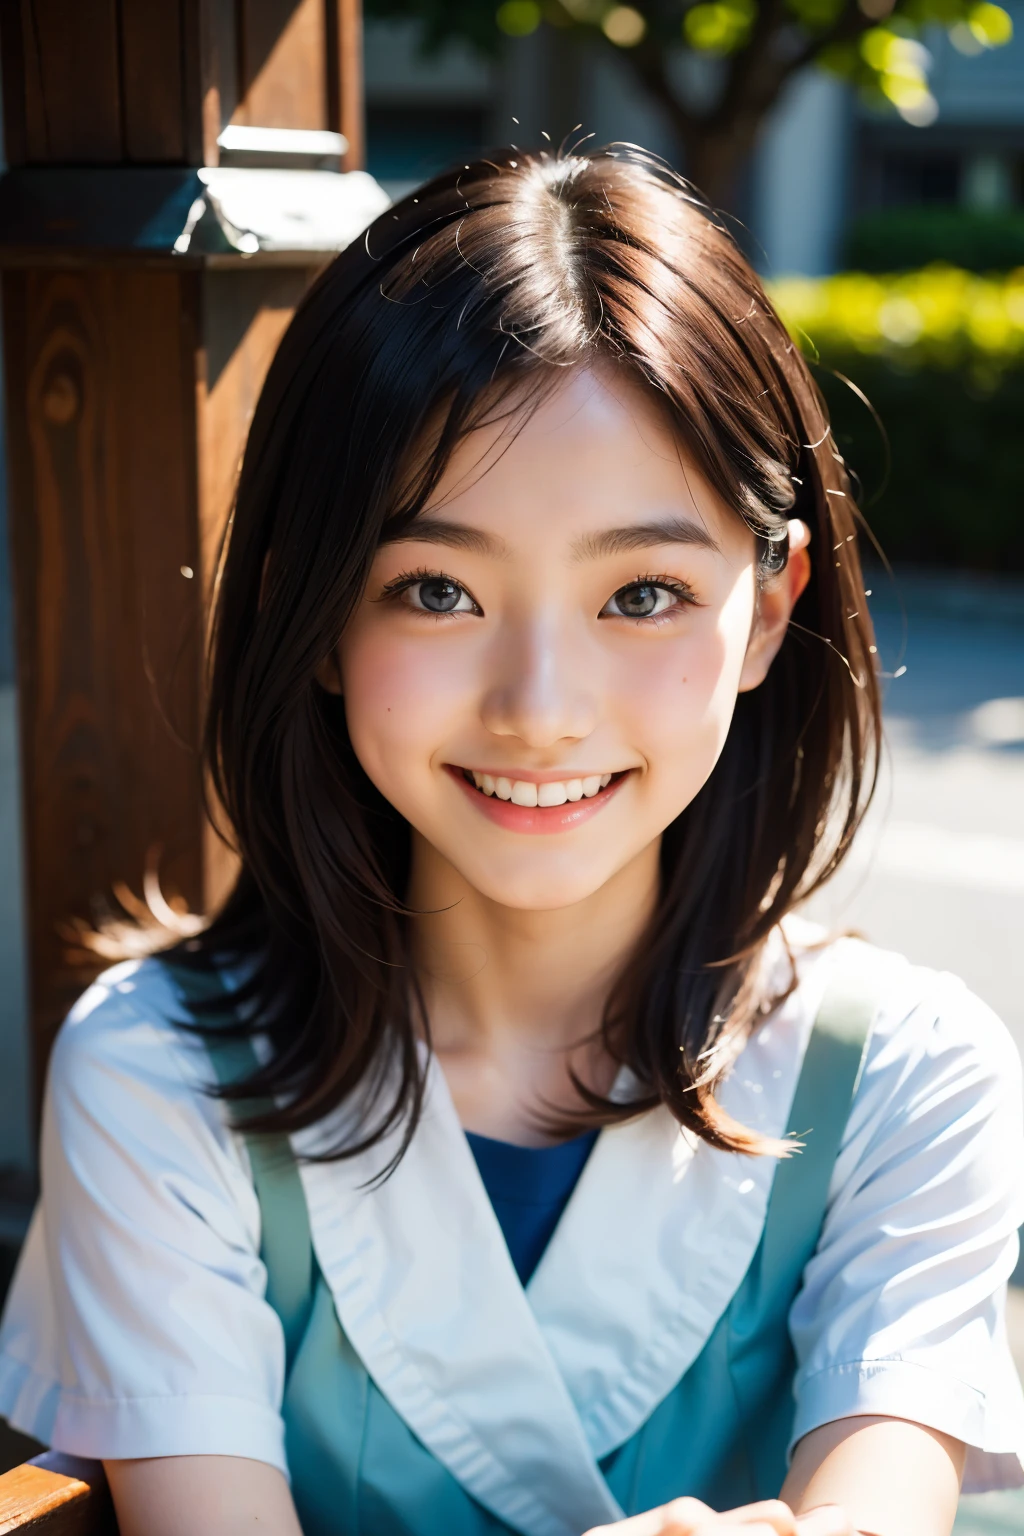 鏡片: 135mm f1.8, (最好的品質),(原始照片), (桌上:1.1), (美麗的 18 歲日本女孩), 可愛的臉孔, (臉型輪廓分明:0.7), (雀斑:0.4), dappled 陽光, 戲劇性的燈光, (日本學校制服), (在校园), 害羞的, (特寫鏡頭:1.2), (微笑),, (明亮的眼睛)、(陽光)